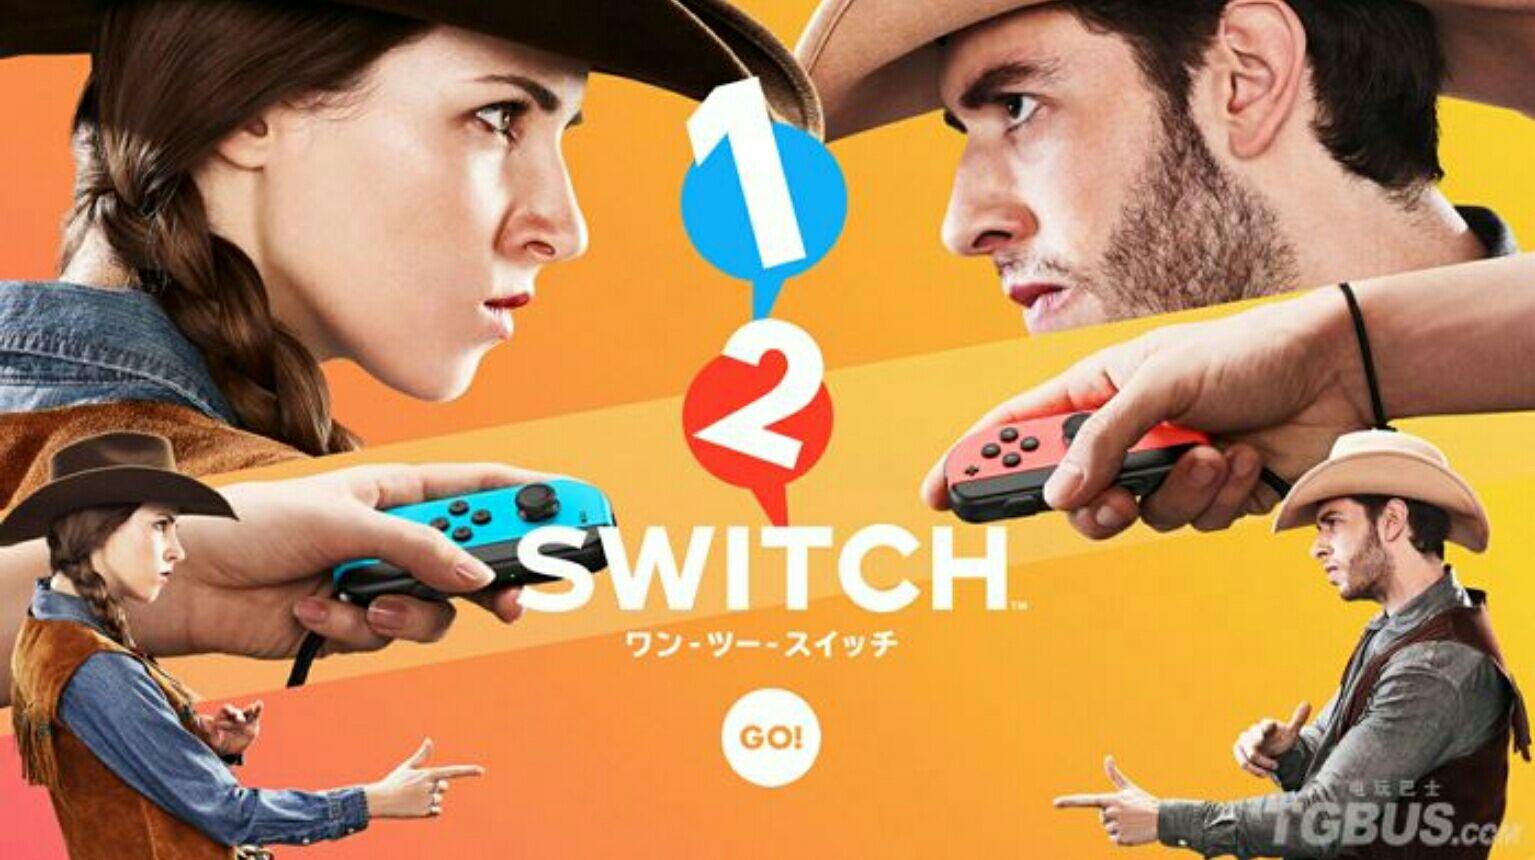 如何评价任天堂 switch 游戏 1-2 switch？ - 知乎